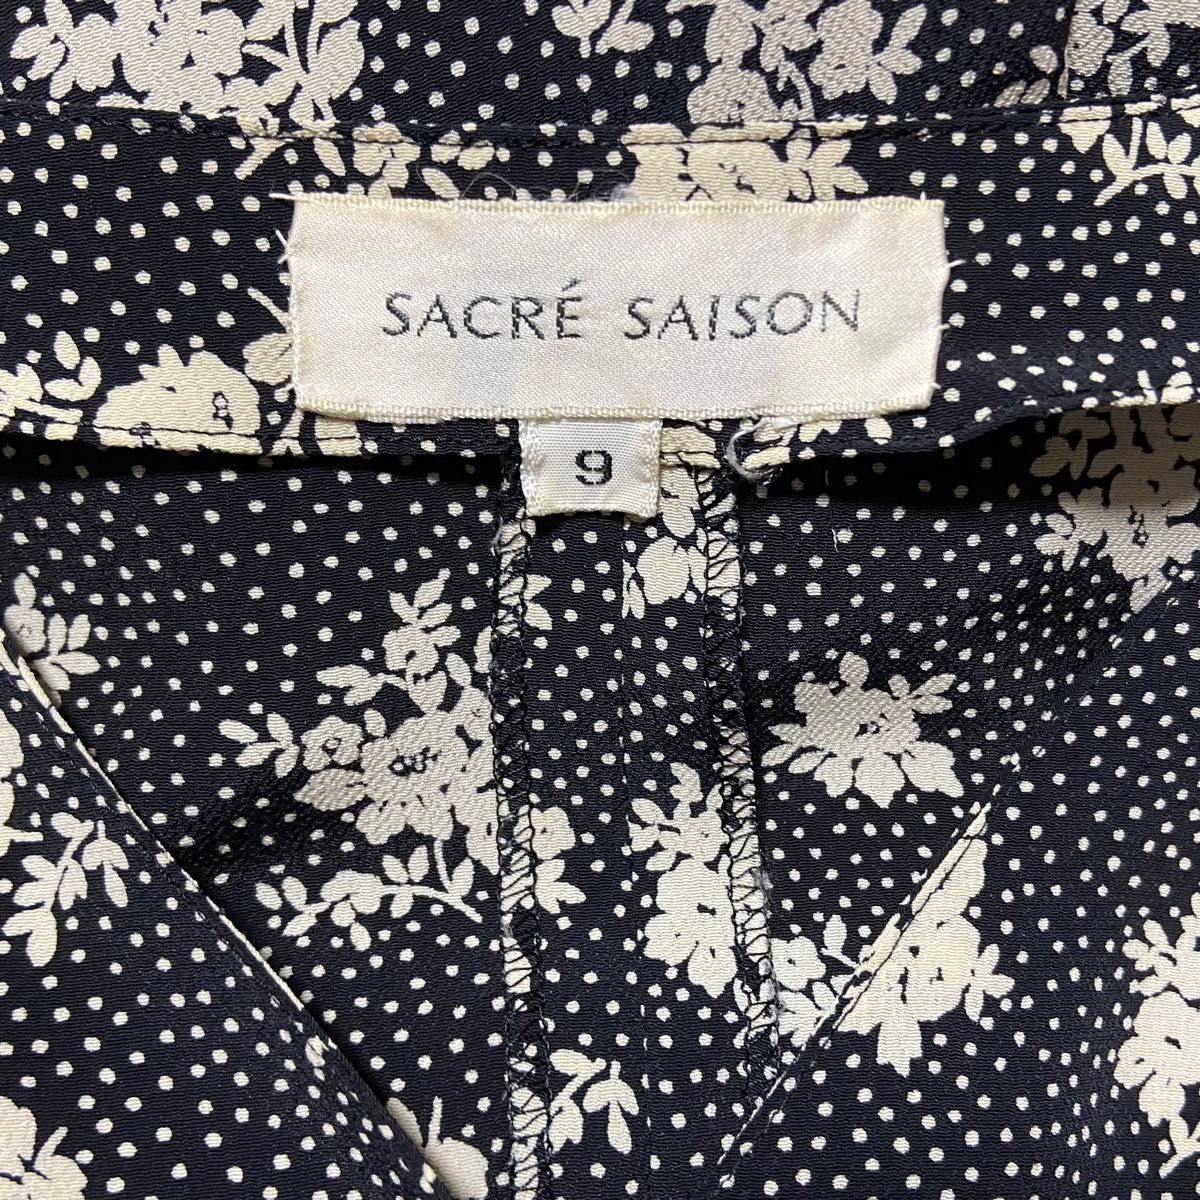 SACRE SAISON 花柄ロングワンピース ドレス 半袖 ブラック